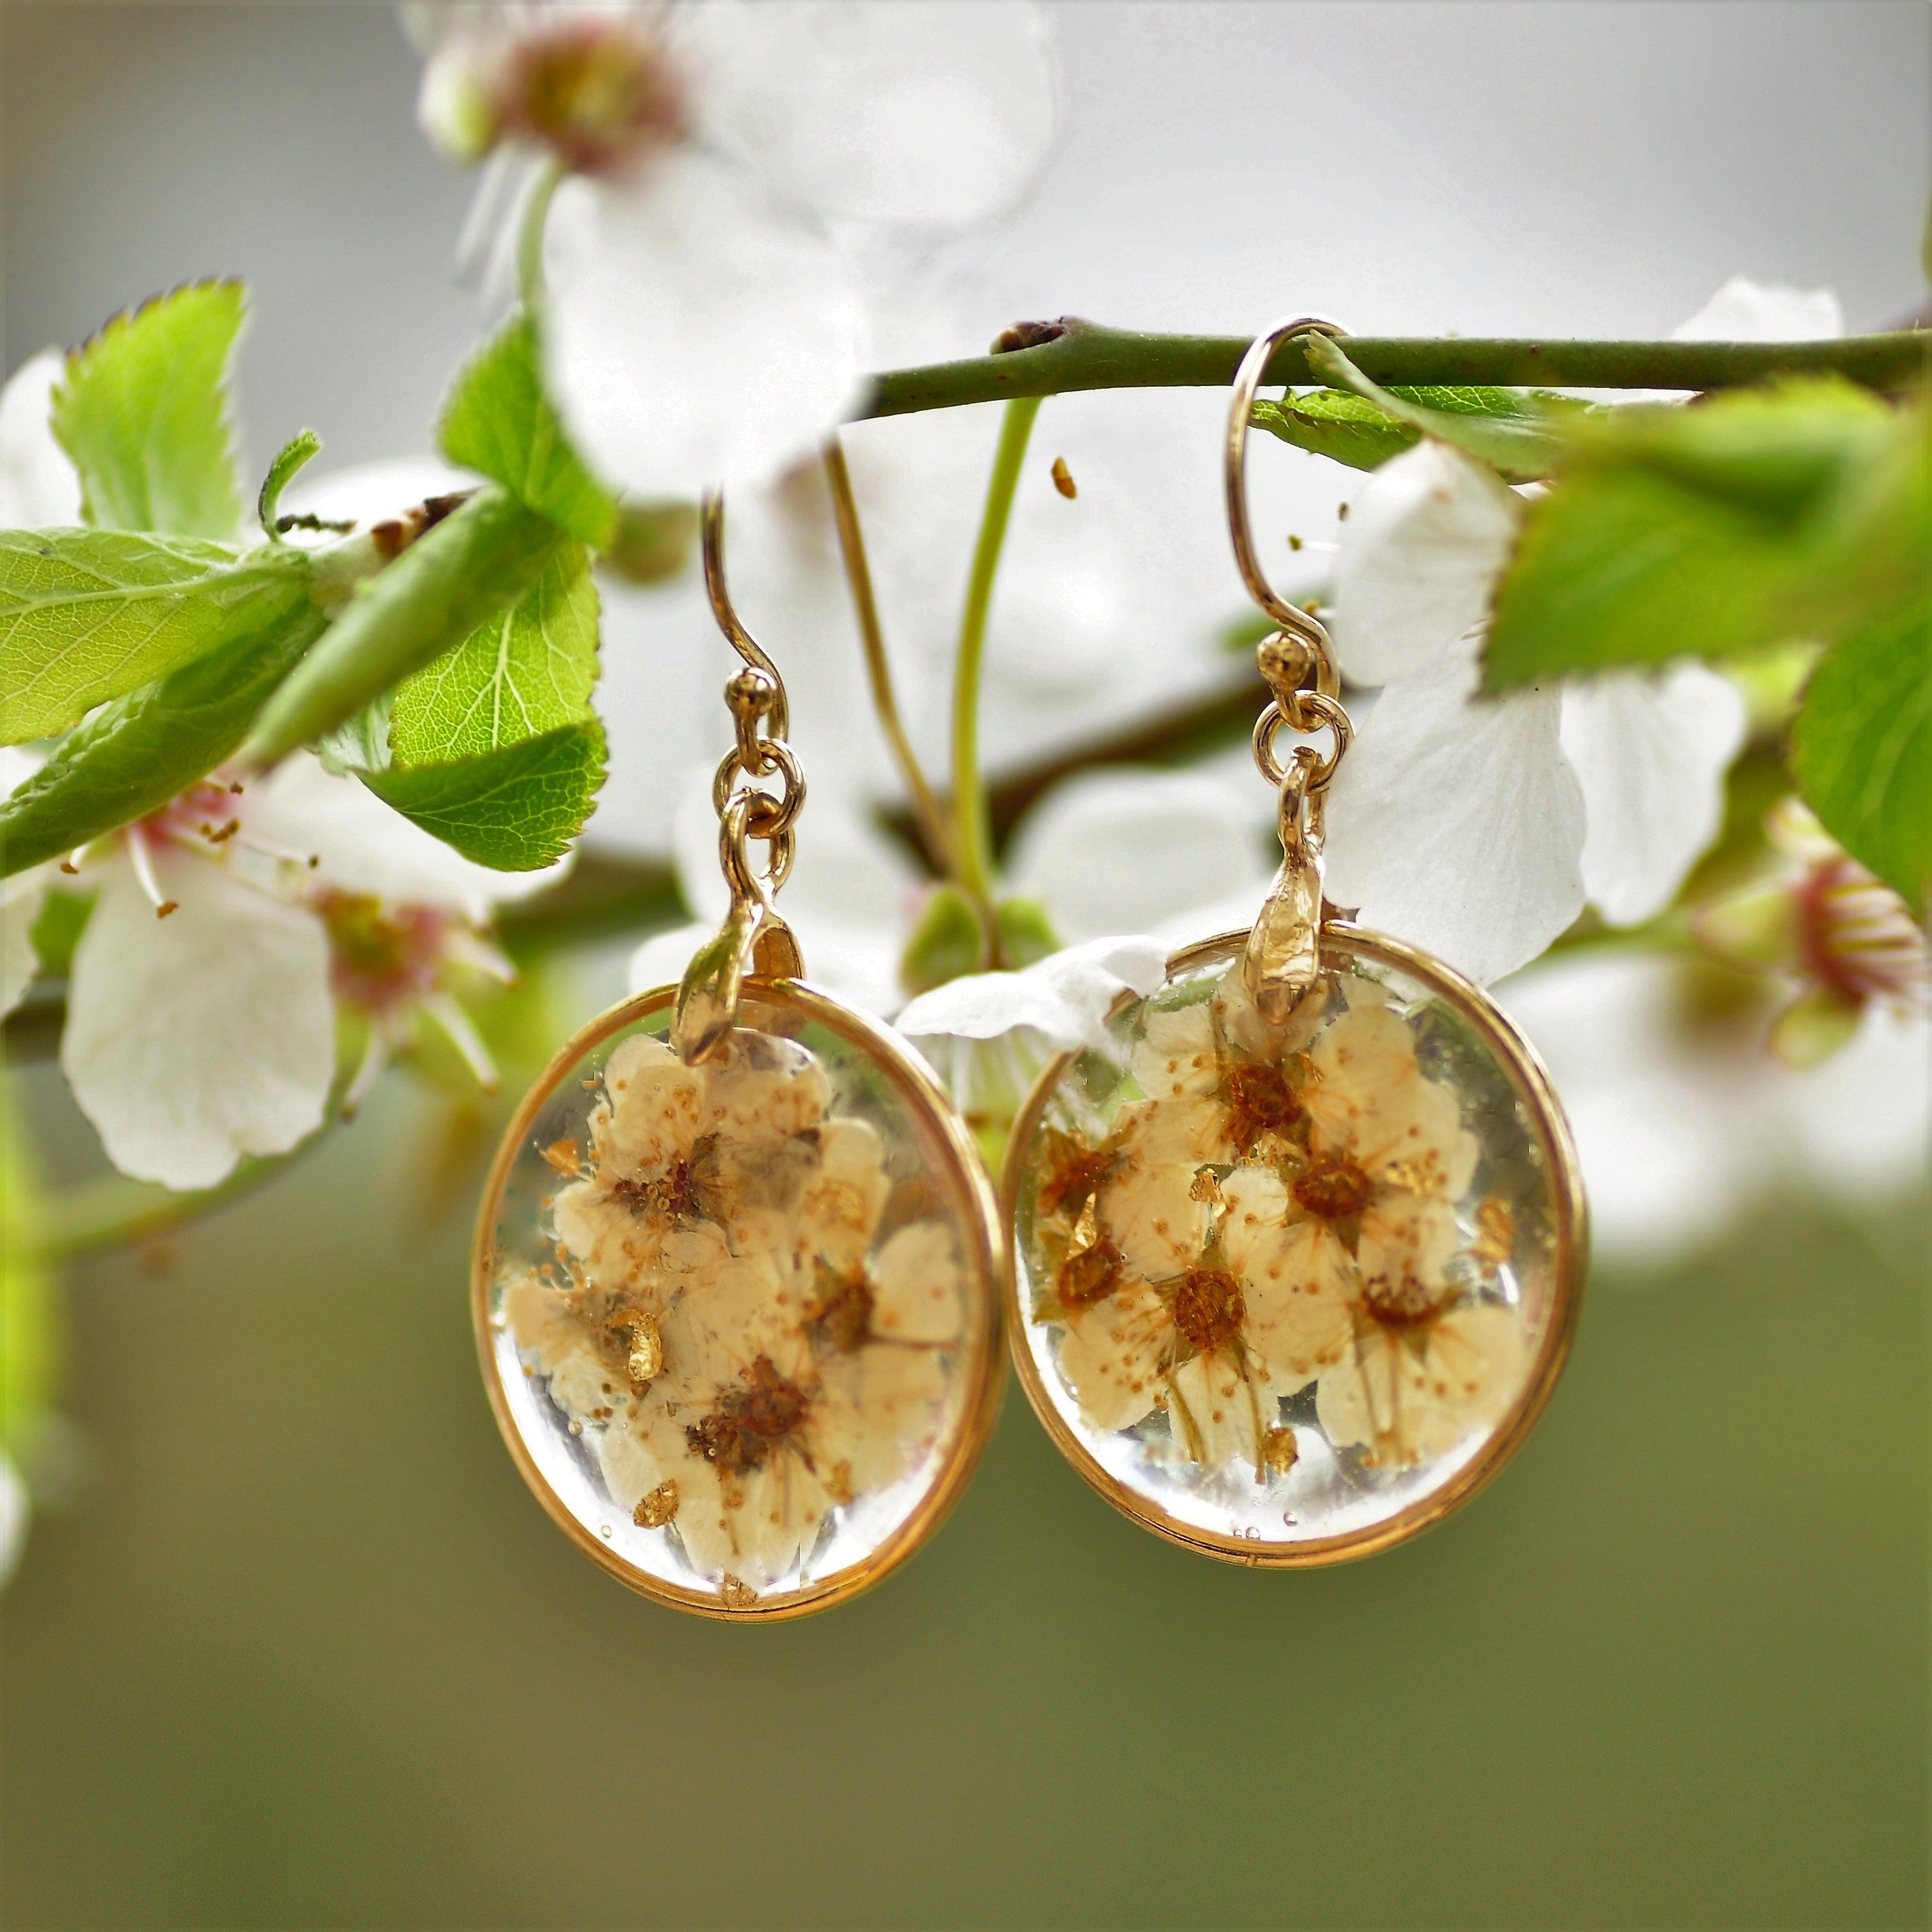 cherry blossom earrings - Gold fill